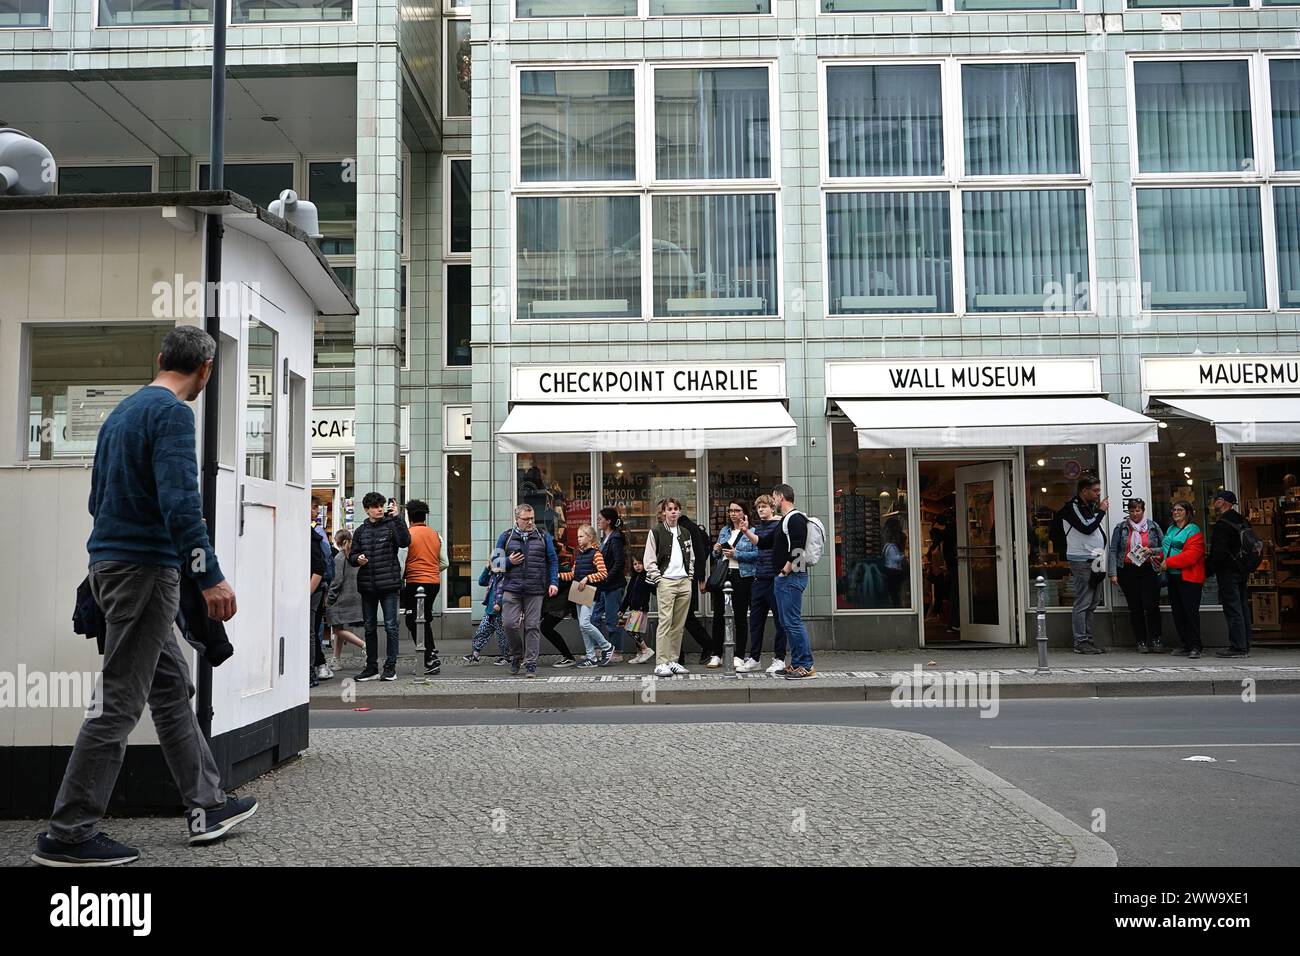 La strada nel settore americano al Checkpoint Charlie, che è il posto di controllo degli Stati Uniti dopo la seconda guerra mondiale, che vanta negozi di souvenir mentre la gente passeggia, Berlino, Germania Foto Stock